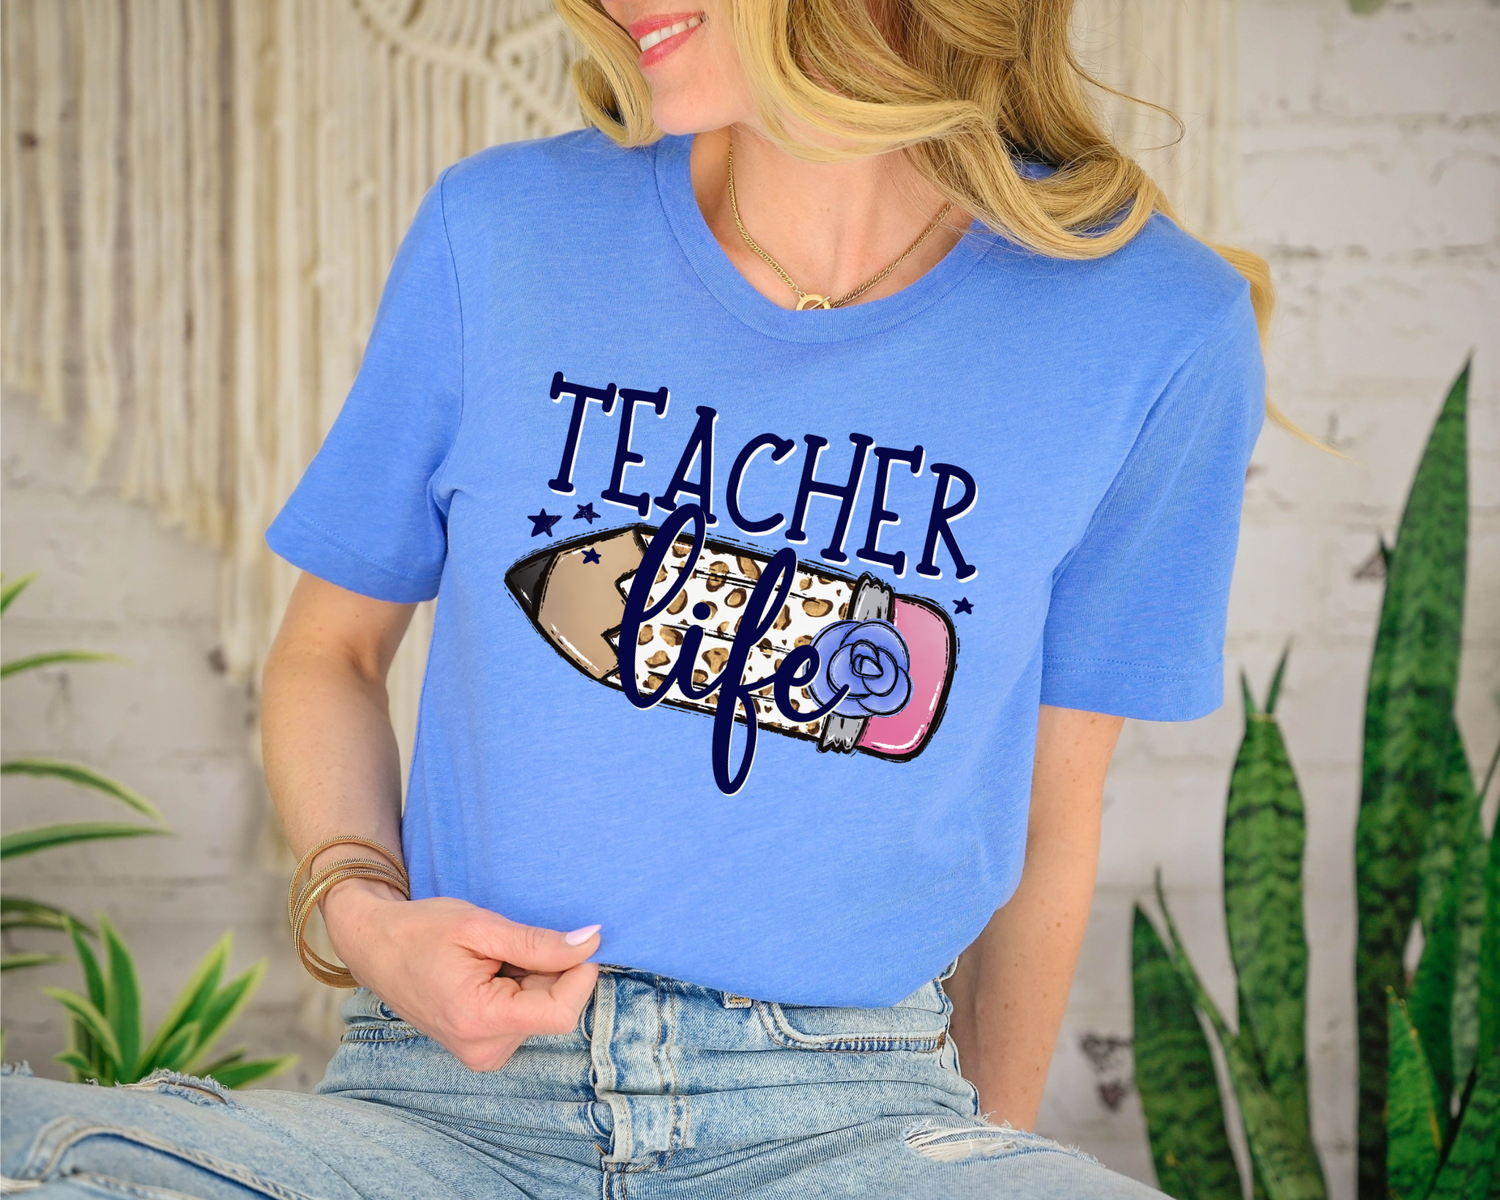 teacher life shirt